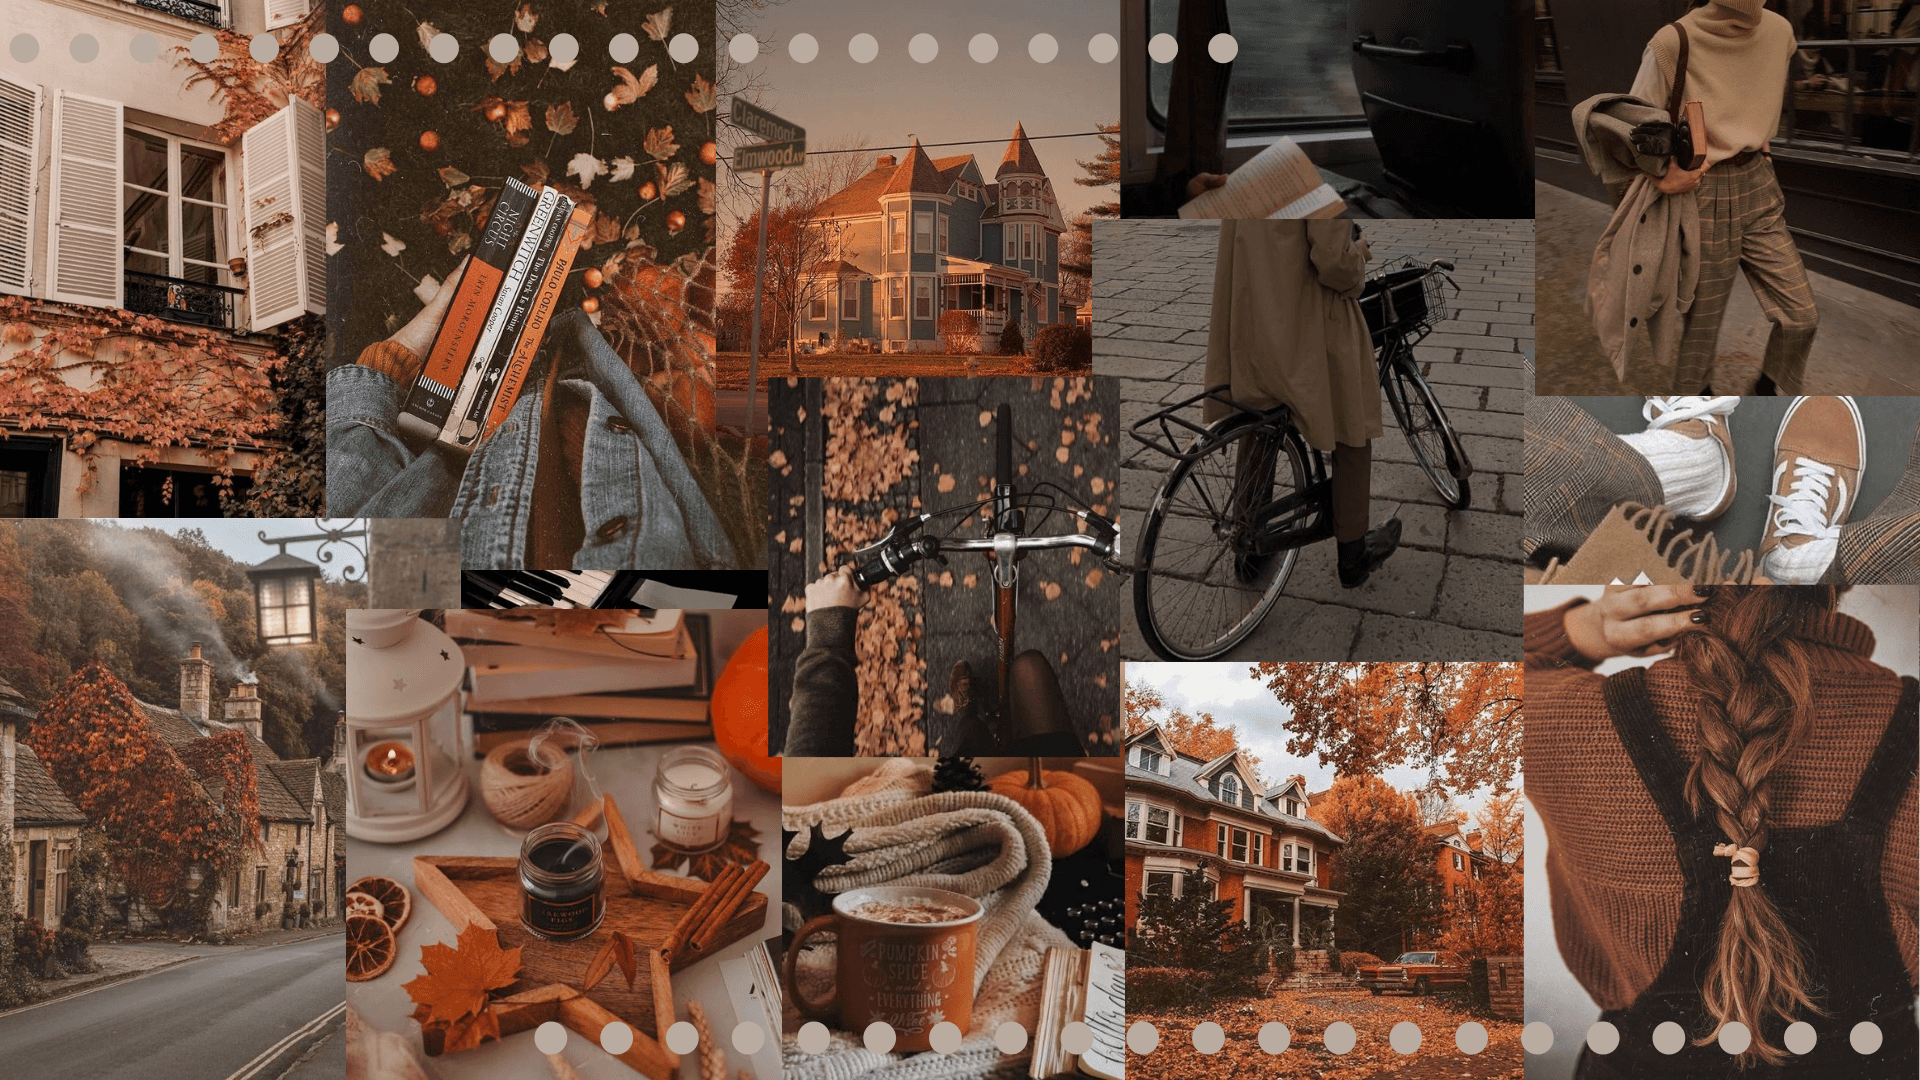 Collageautunnale - Un Collage Di Foto Dell'autunno